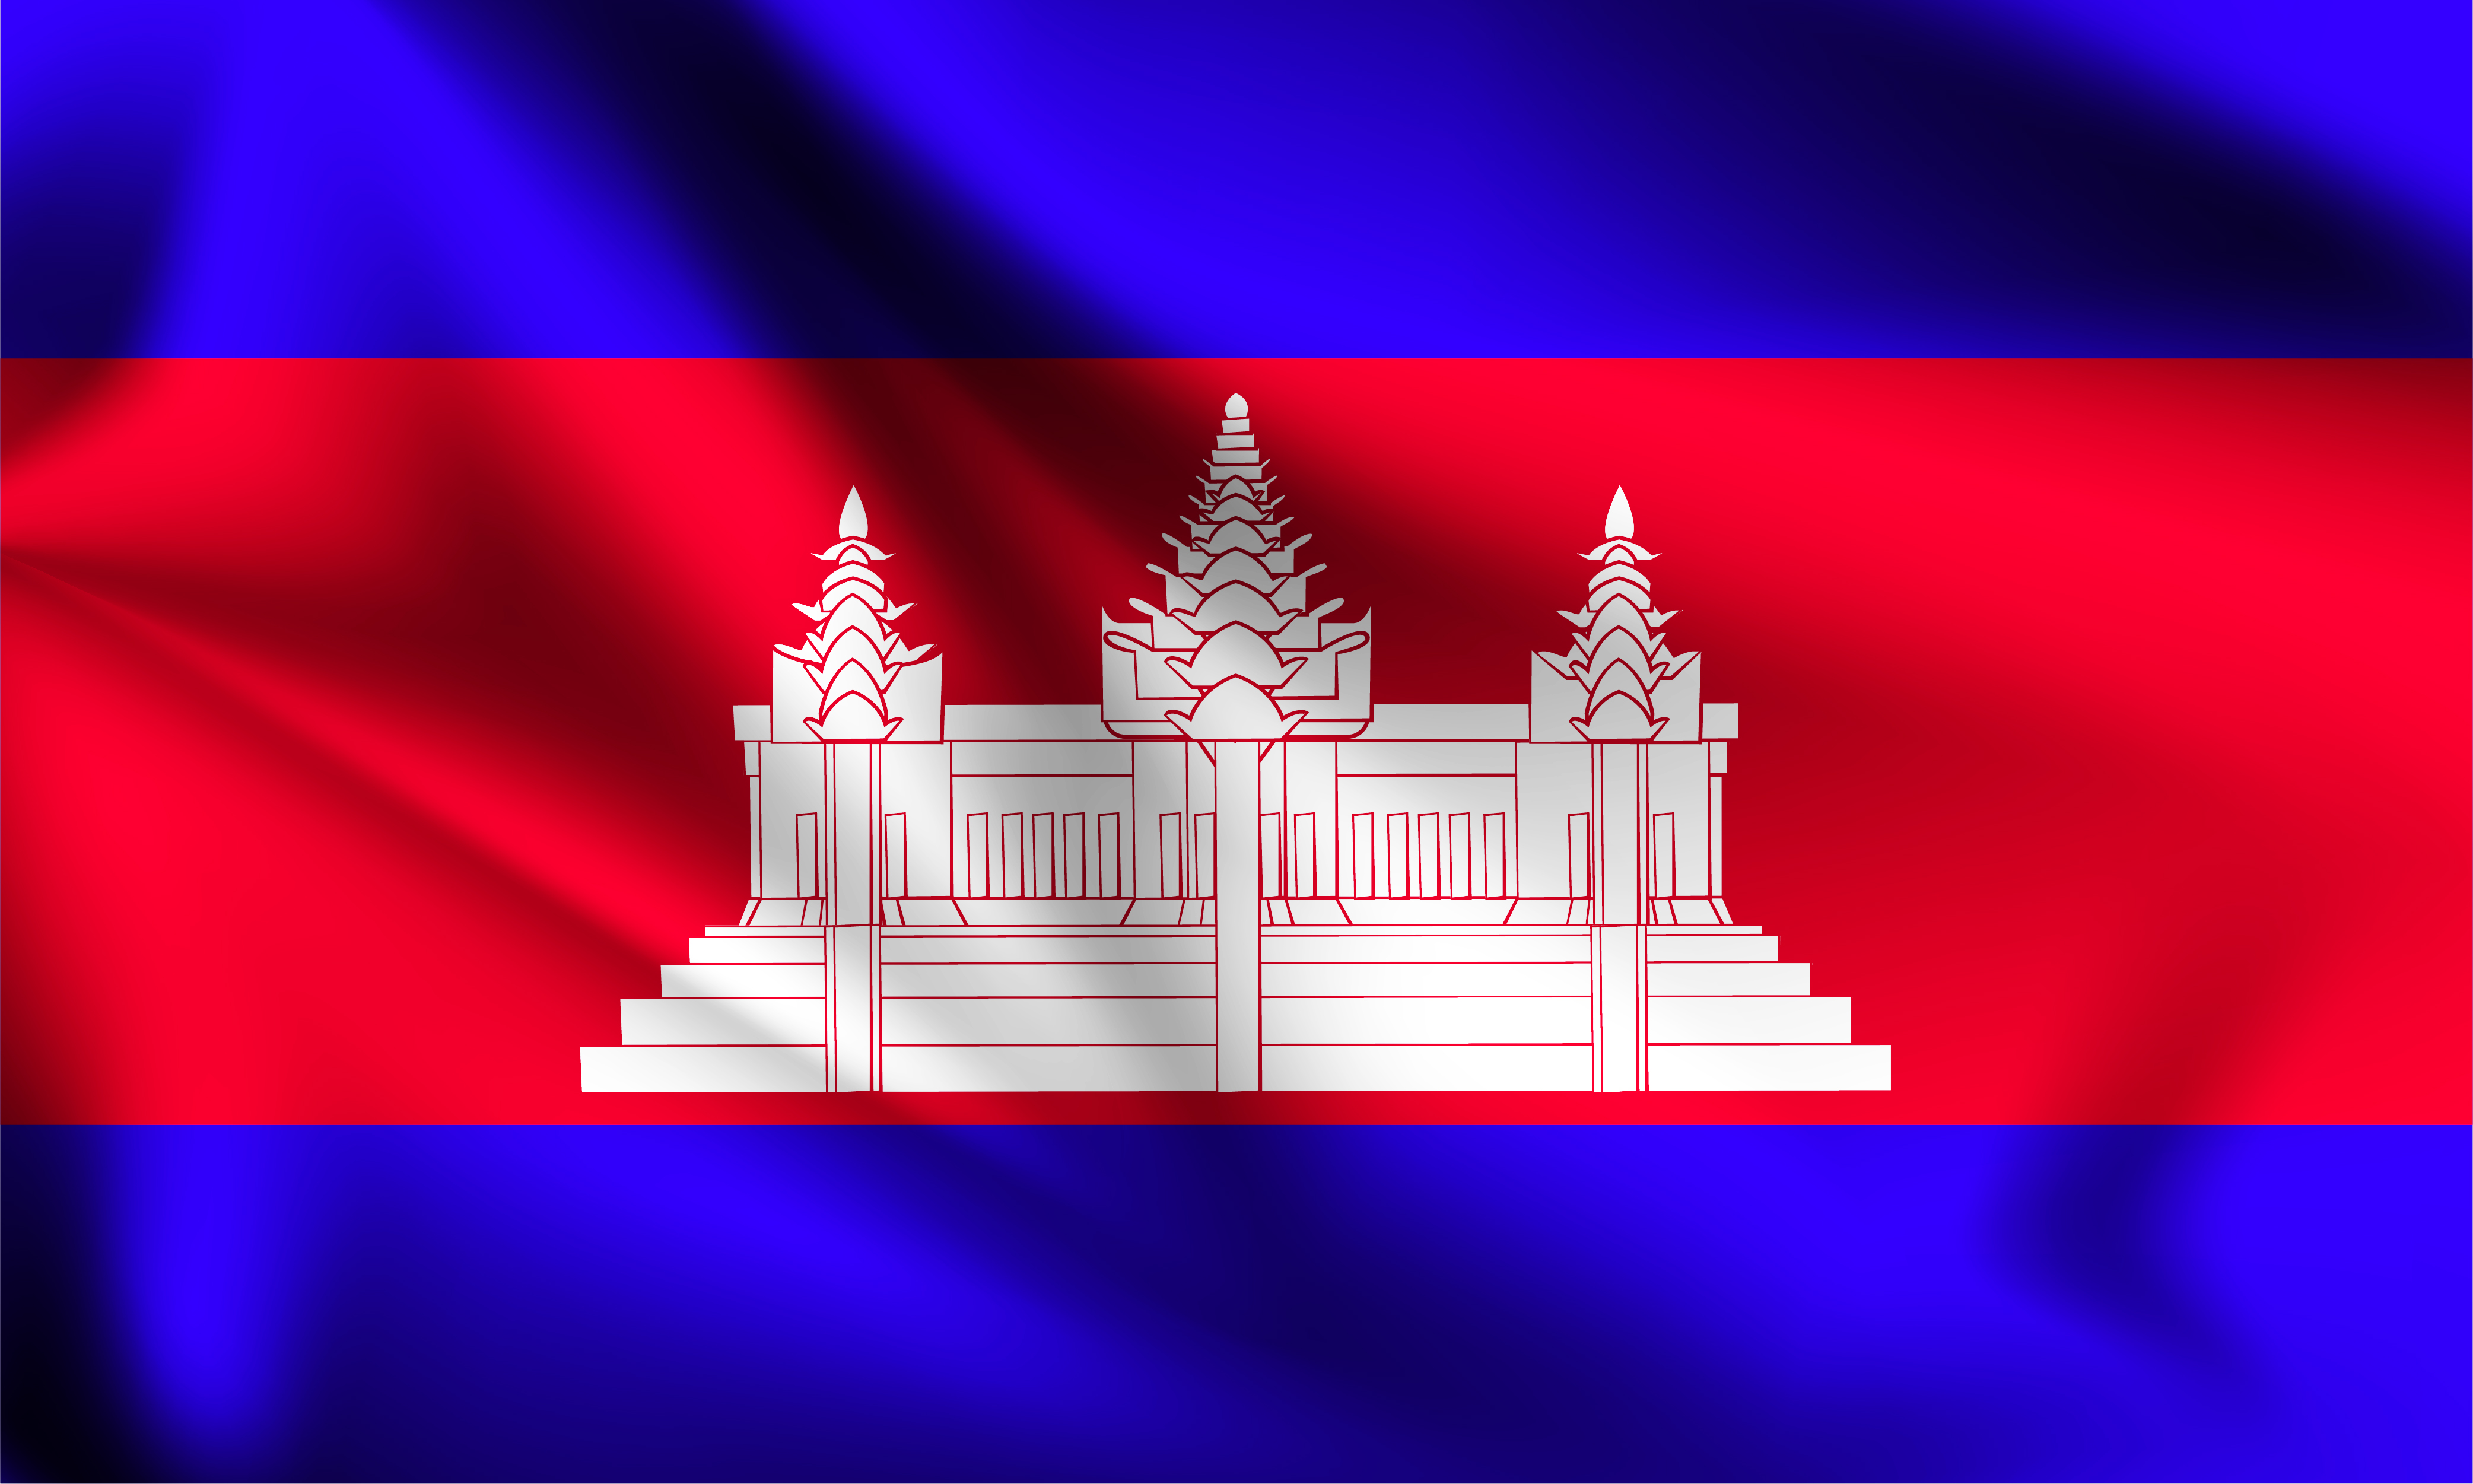 Download Cambodia 3d flag - Download Free Vectors, Clipart Graphics ...